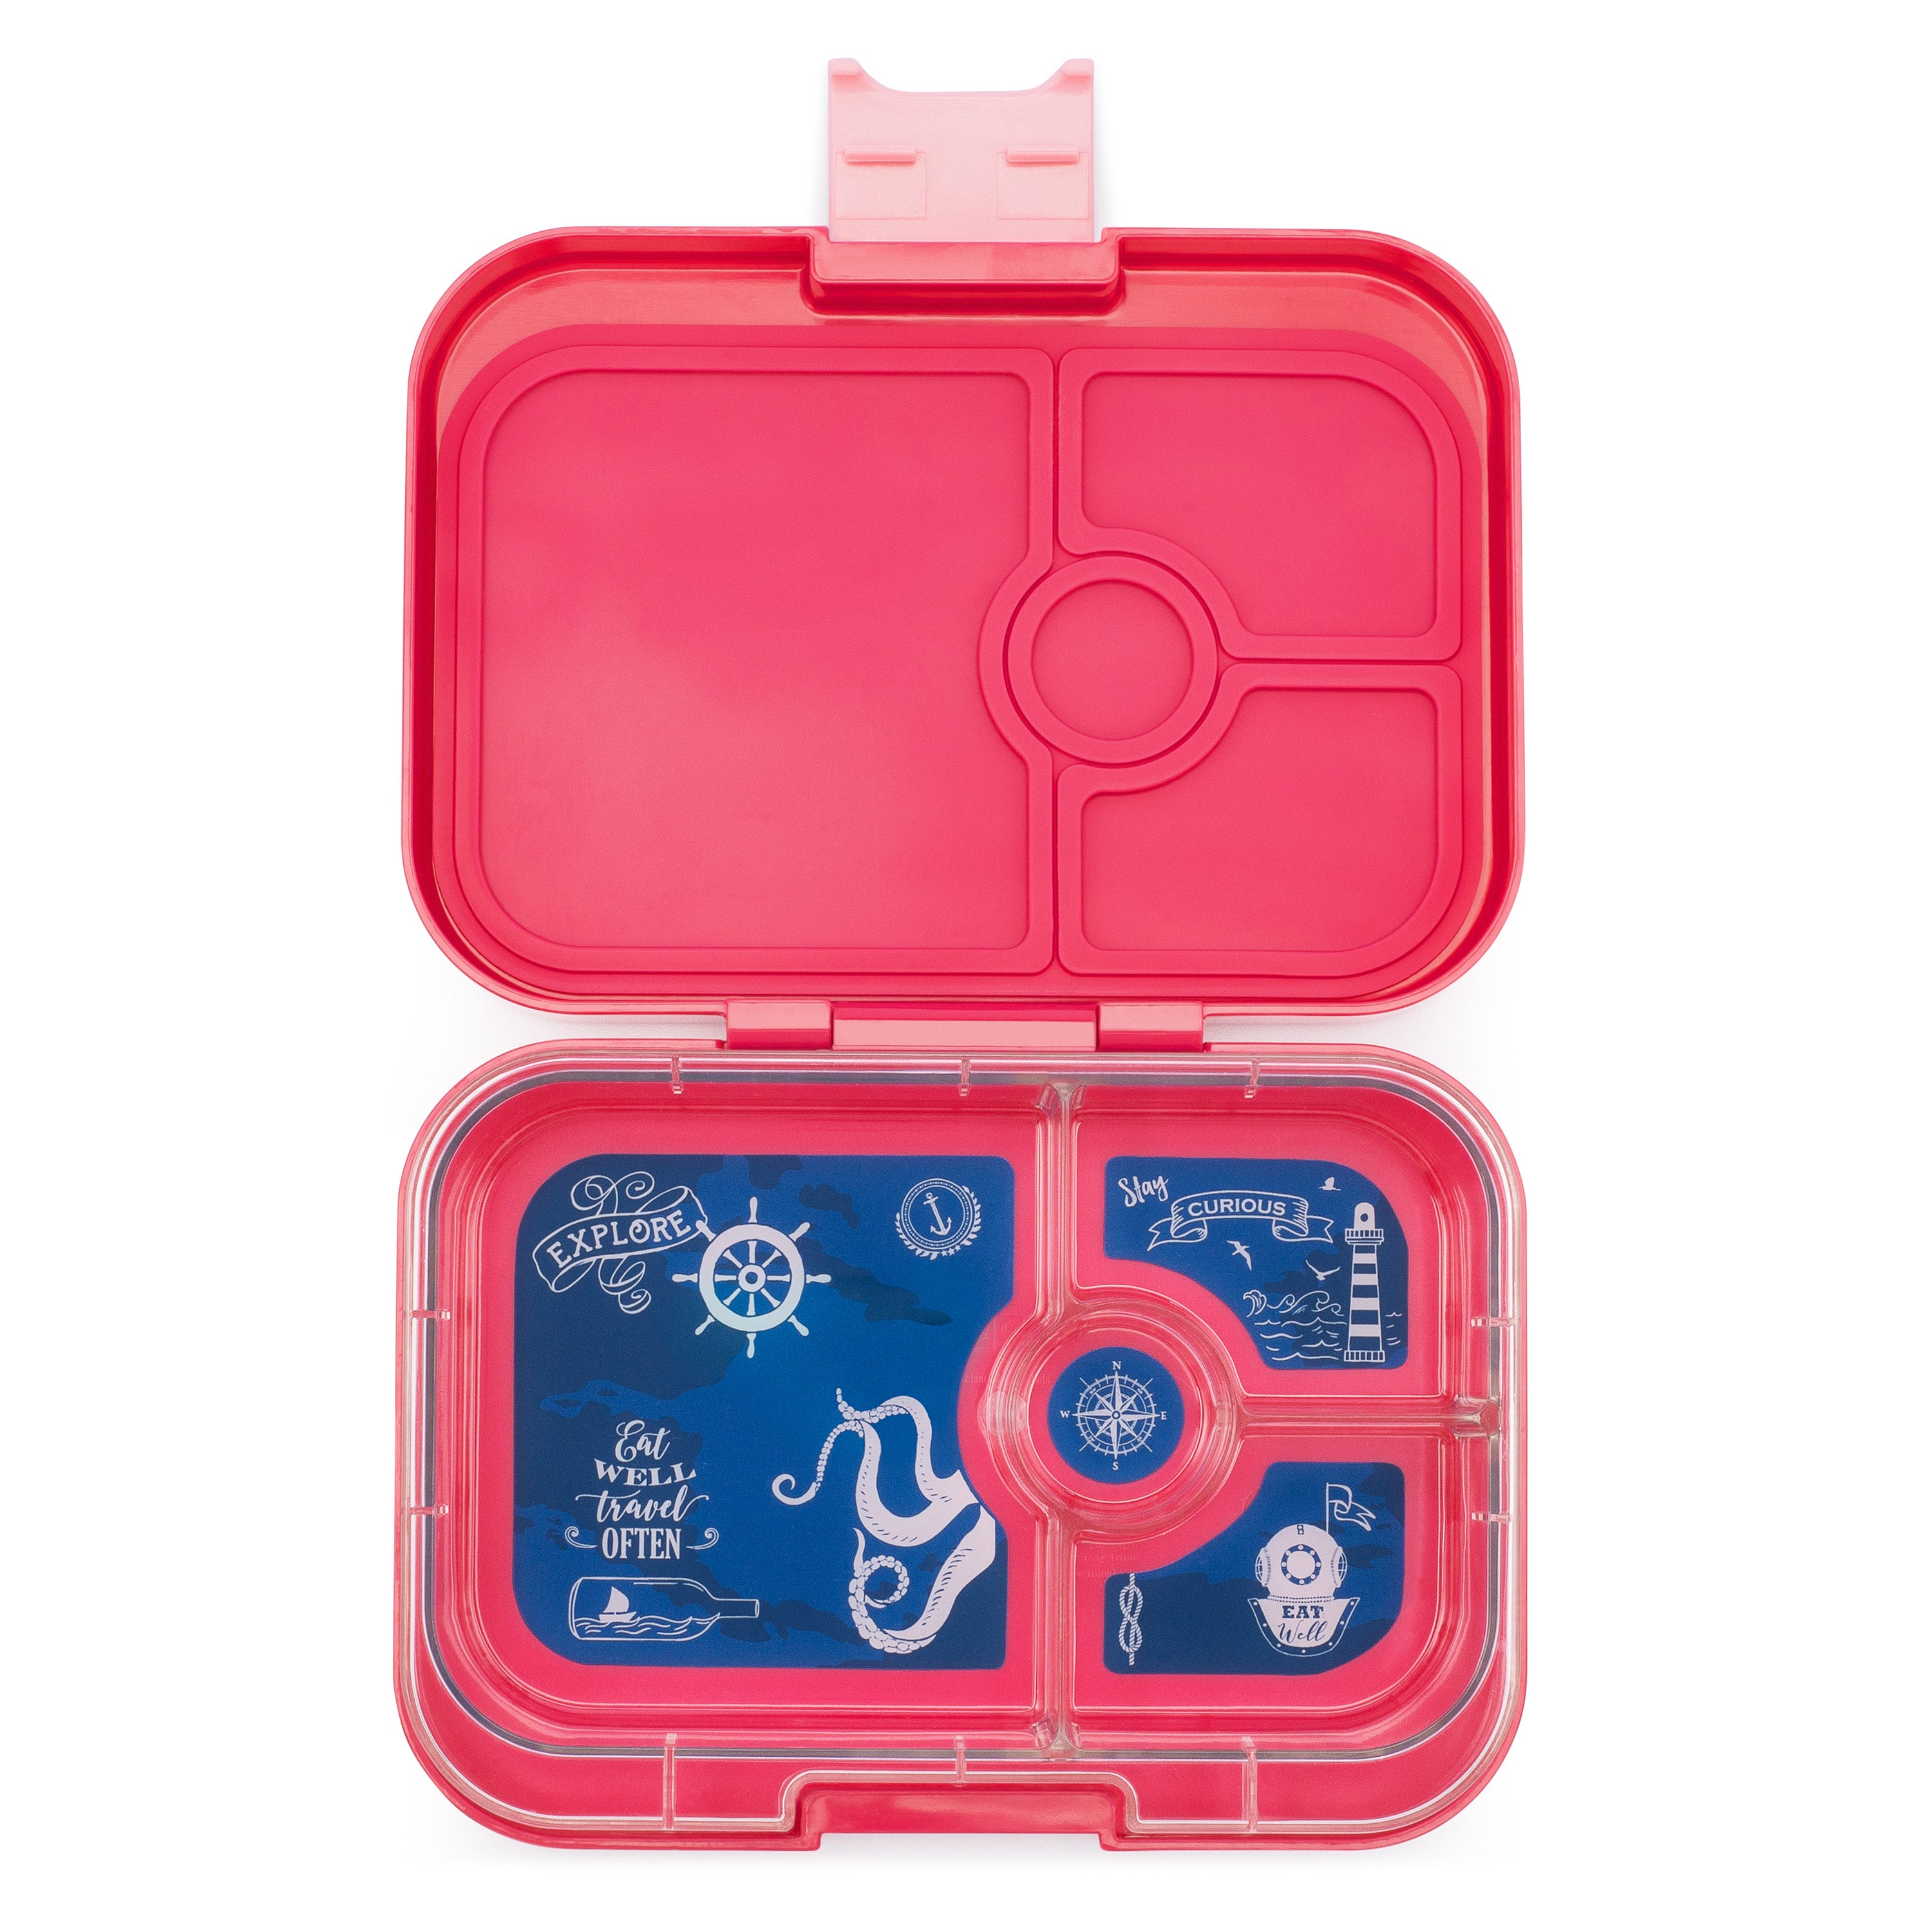 yumbox-panino-lotus-pink-4-compartment-lunch-box- (2)